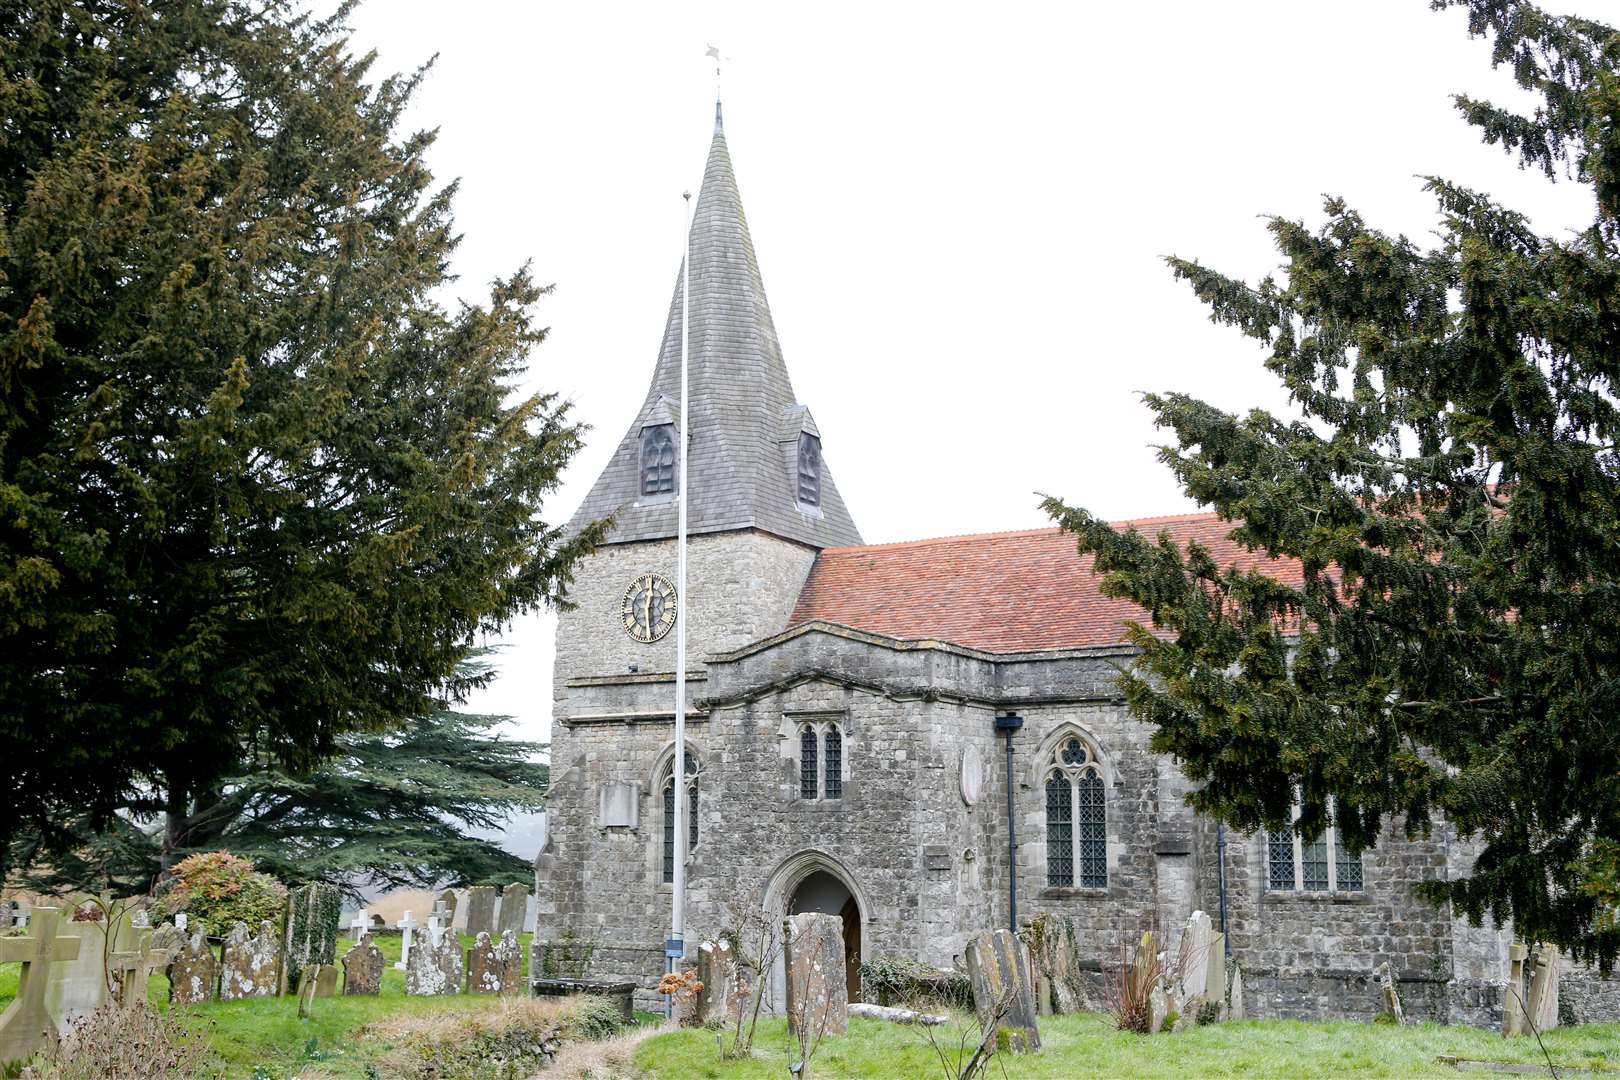 The parish church in East Farleigh